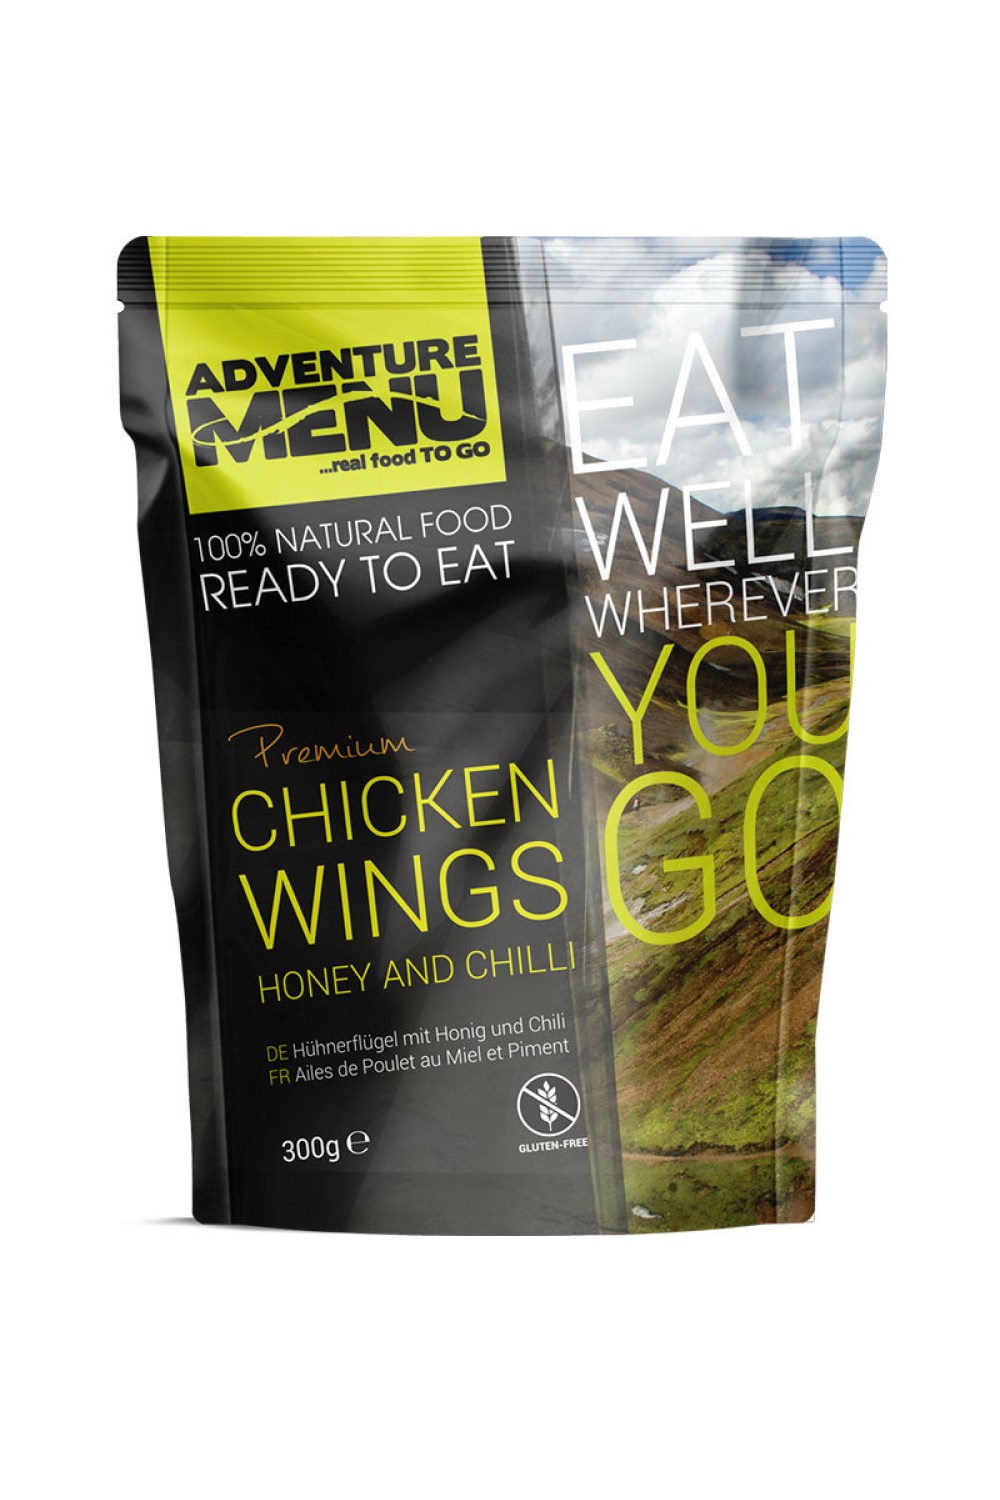 Premium Chicken Wings HoneyandChilli (300g) -